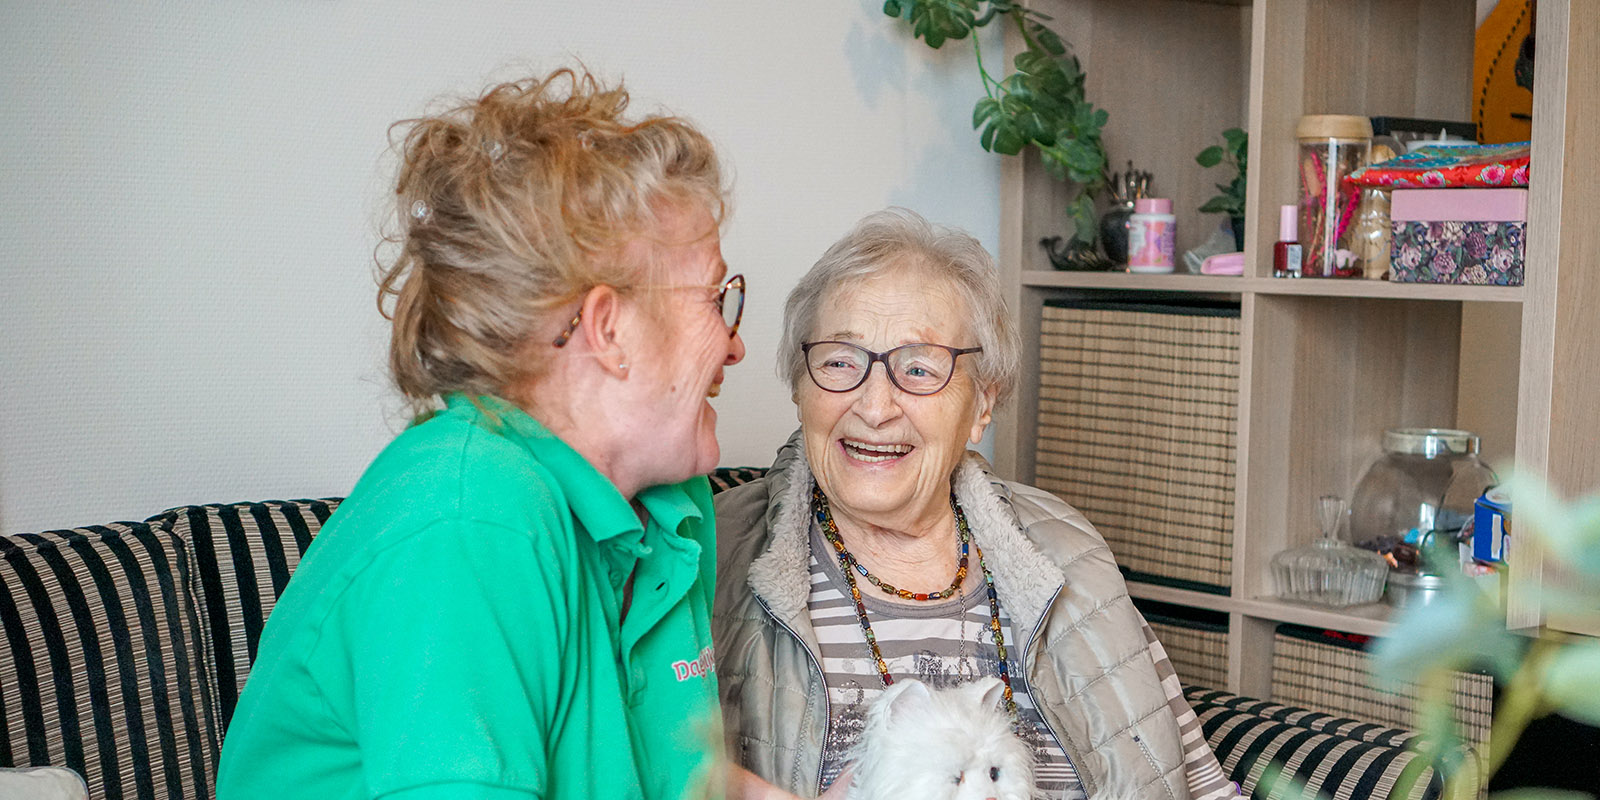 Een zorgmedewerker van Dagelijks Leven knuffelt een bewoner van een woonzorglocatie voor mensen met dementie.